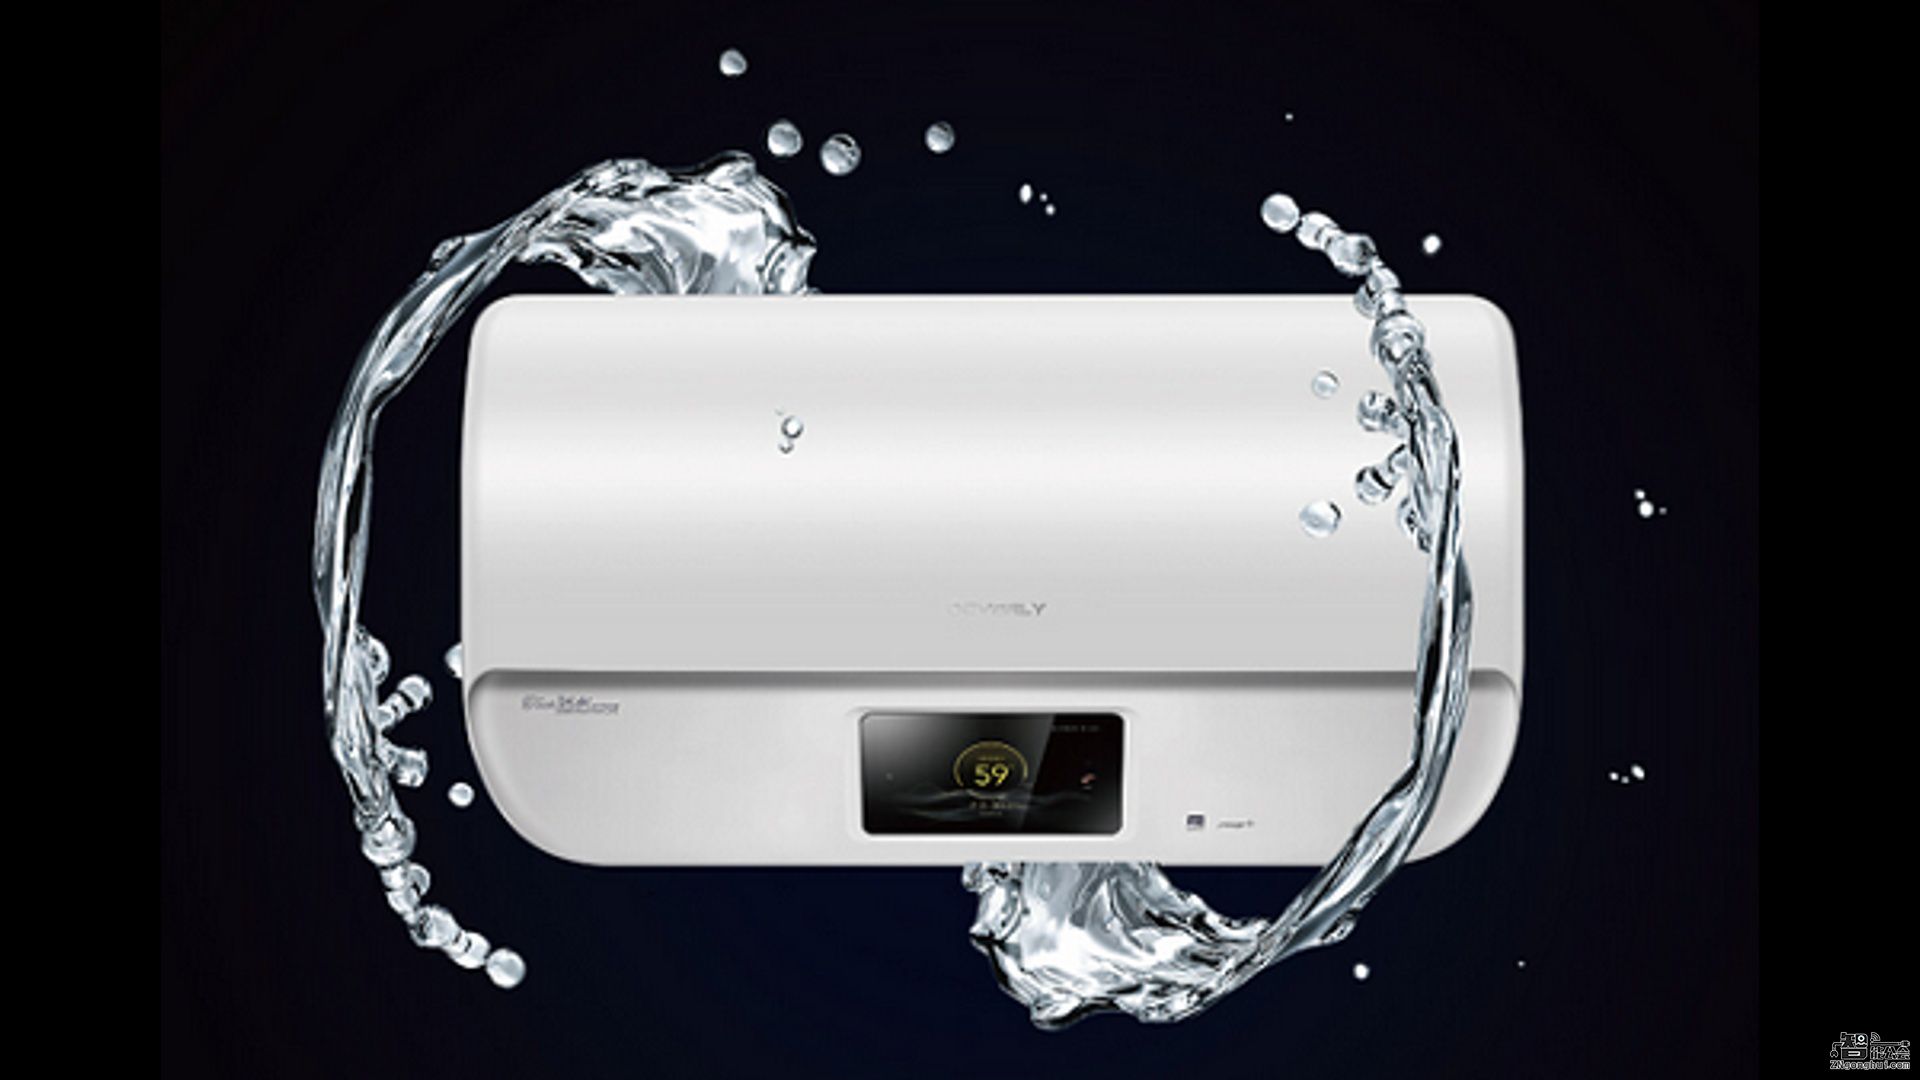 大中首发美的首款恒温电热水器 全新沐浴体验 智能公会